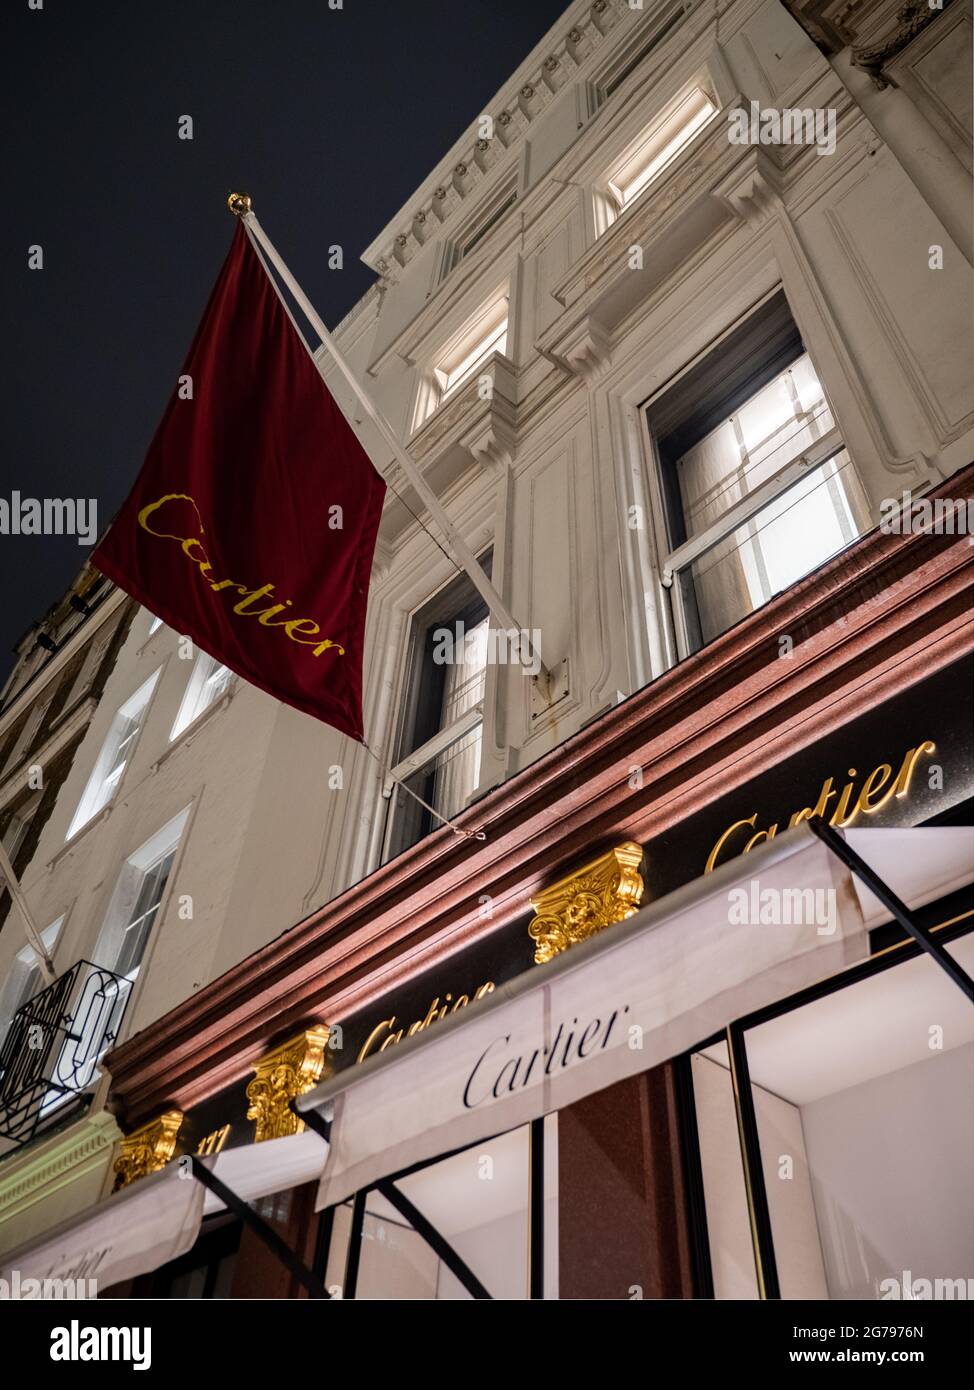 Cartier, Bond Street, Londres. Une boutique de bijoux dans le quartier de détail le plus sélectionné de Londres, près de Piccadilly et Mayfair. Banque D'Images